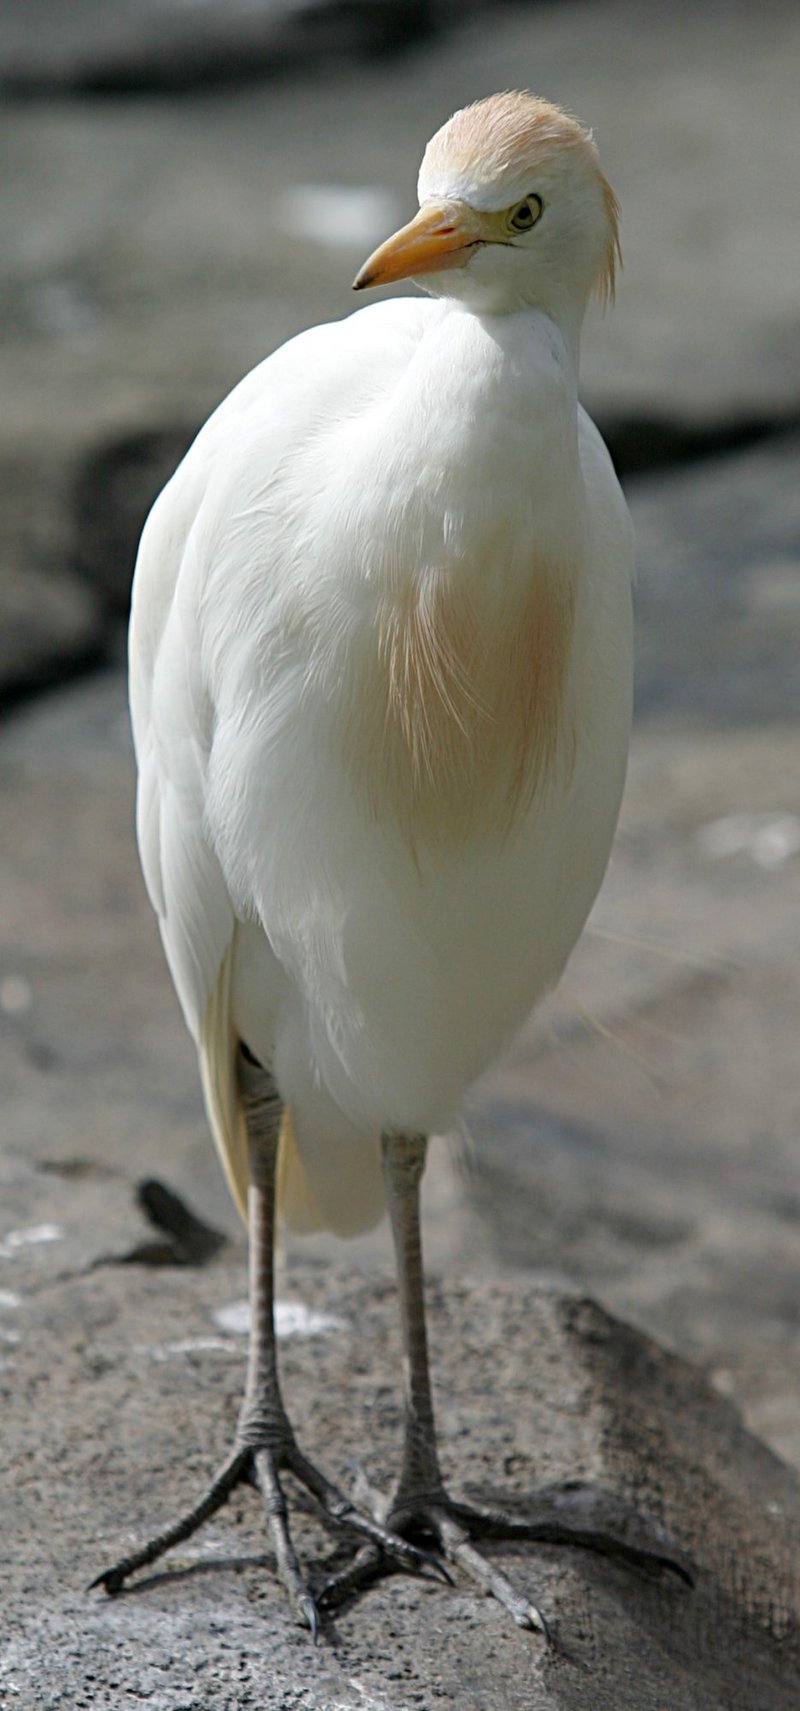 Cattle Egret (Bubulcus ibis) - Wiki; DISPLAY FULL IMAGE.